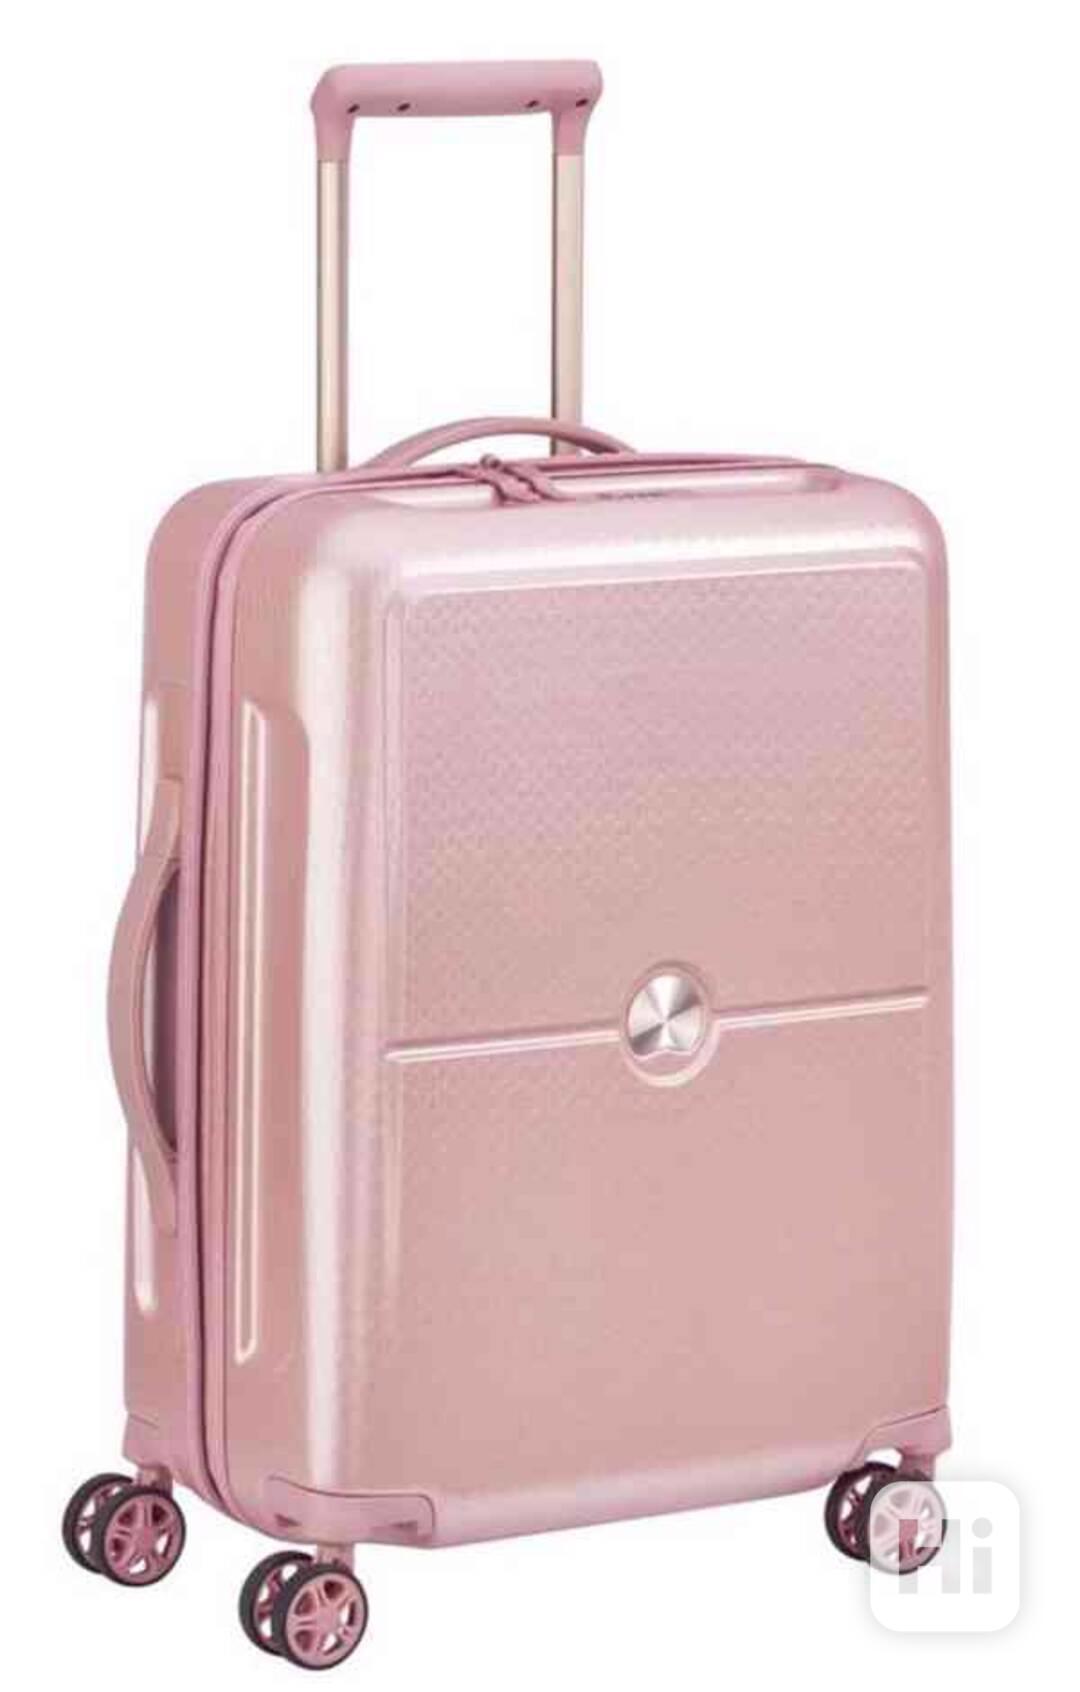 značkový kufr Delsey Turenne- růžový - foto 1